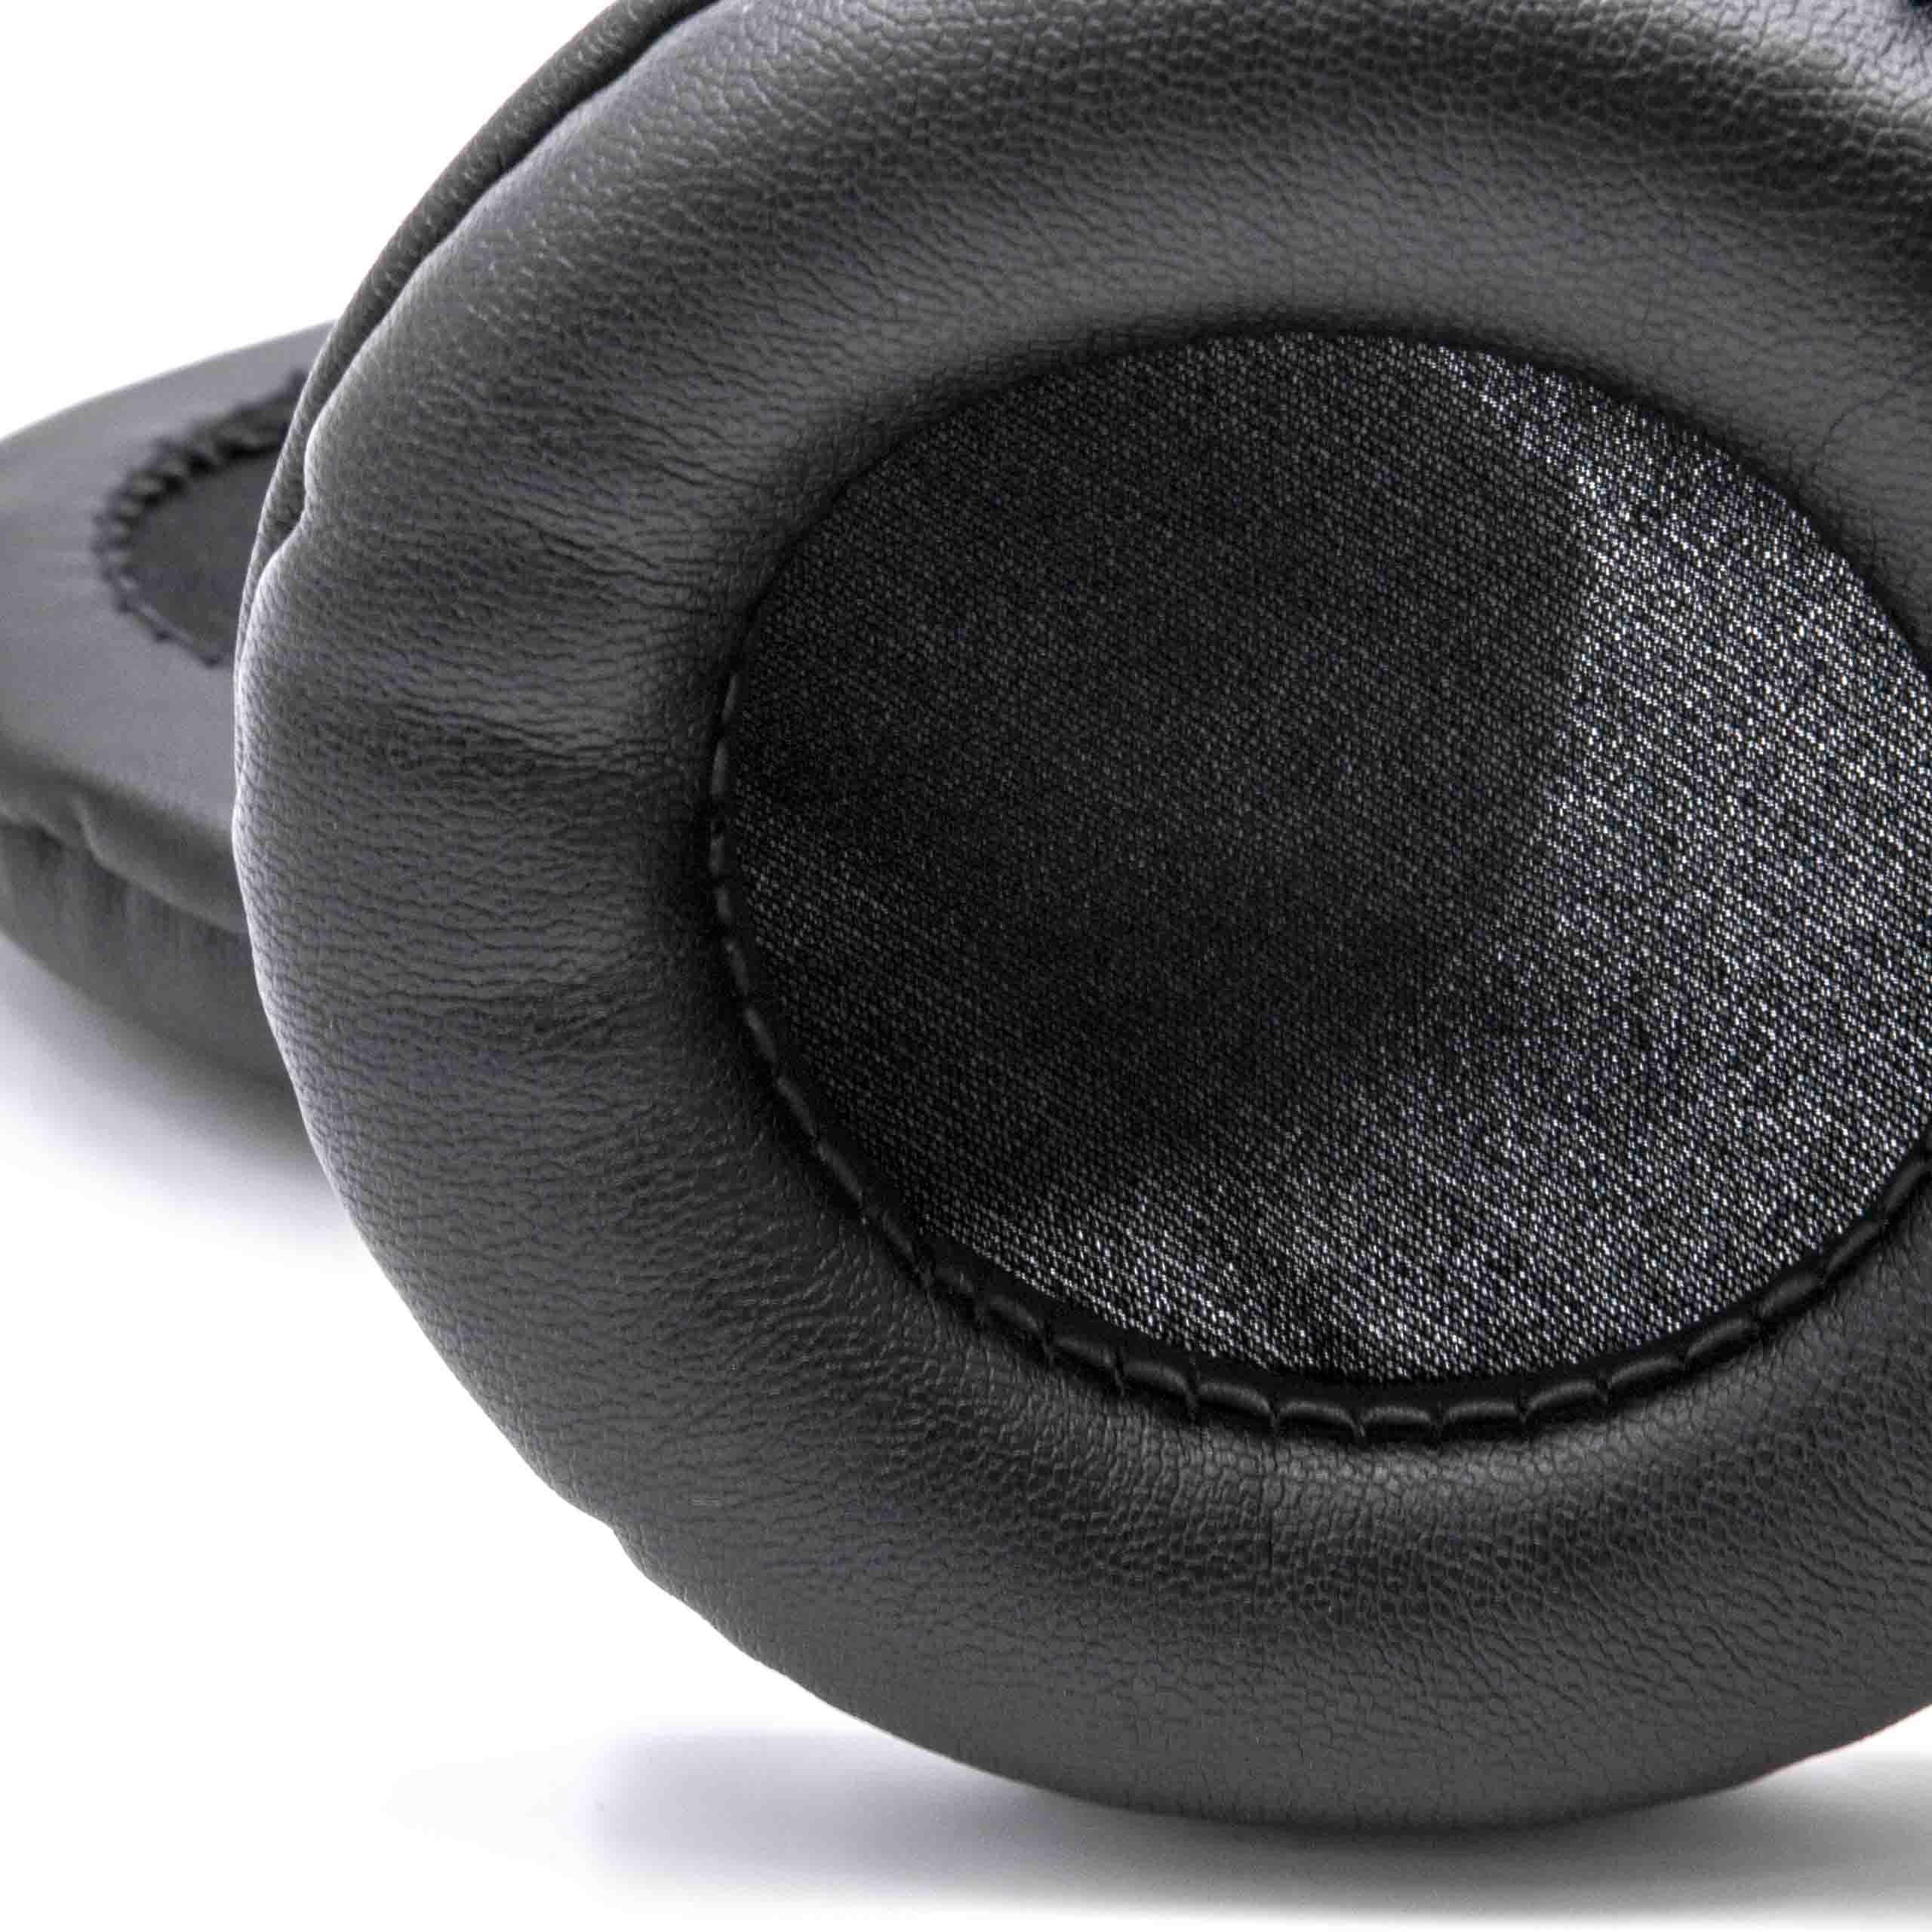 Ohrpolster vhbw passend die benötigen 95mm für Kopfhörer, Ohrpolster Kopfhörer